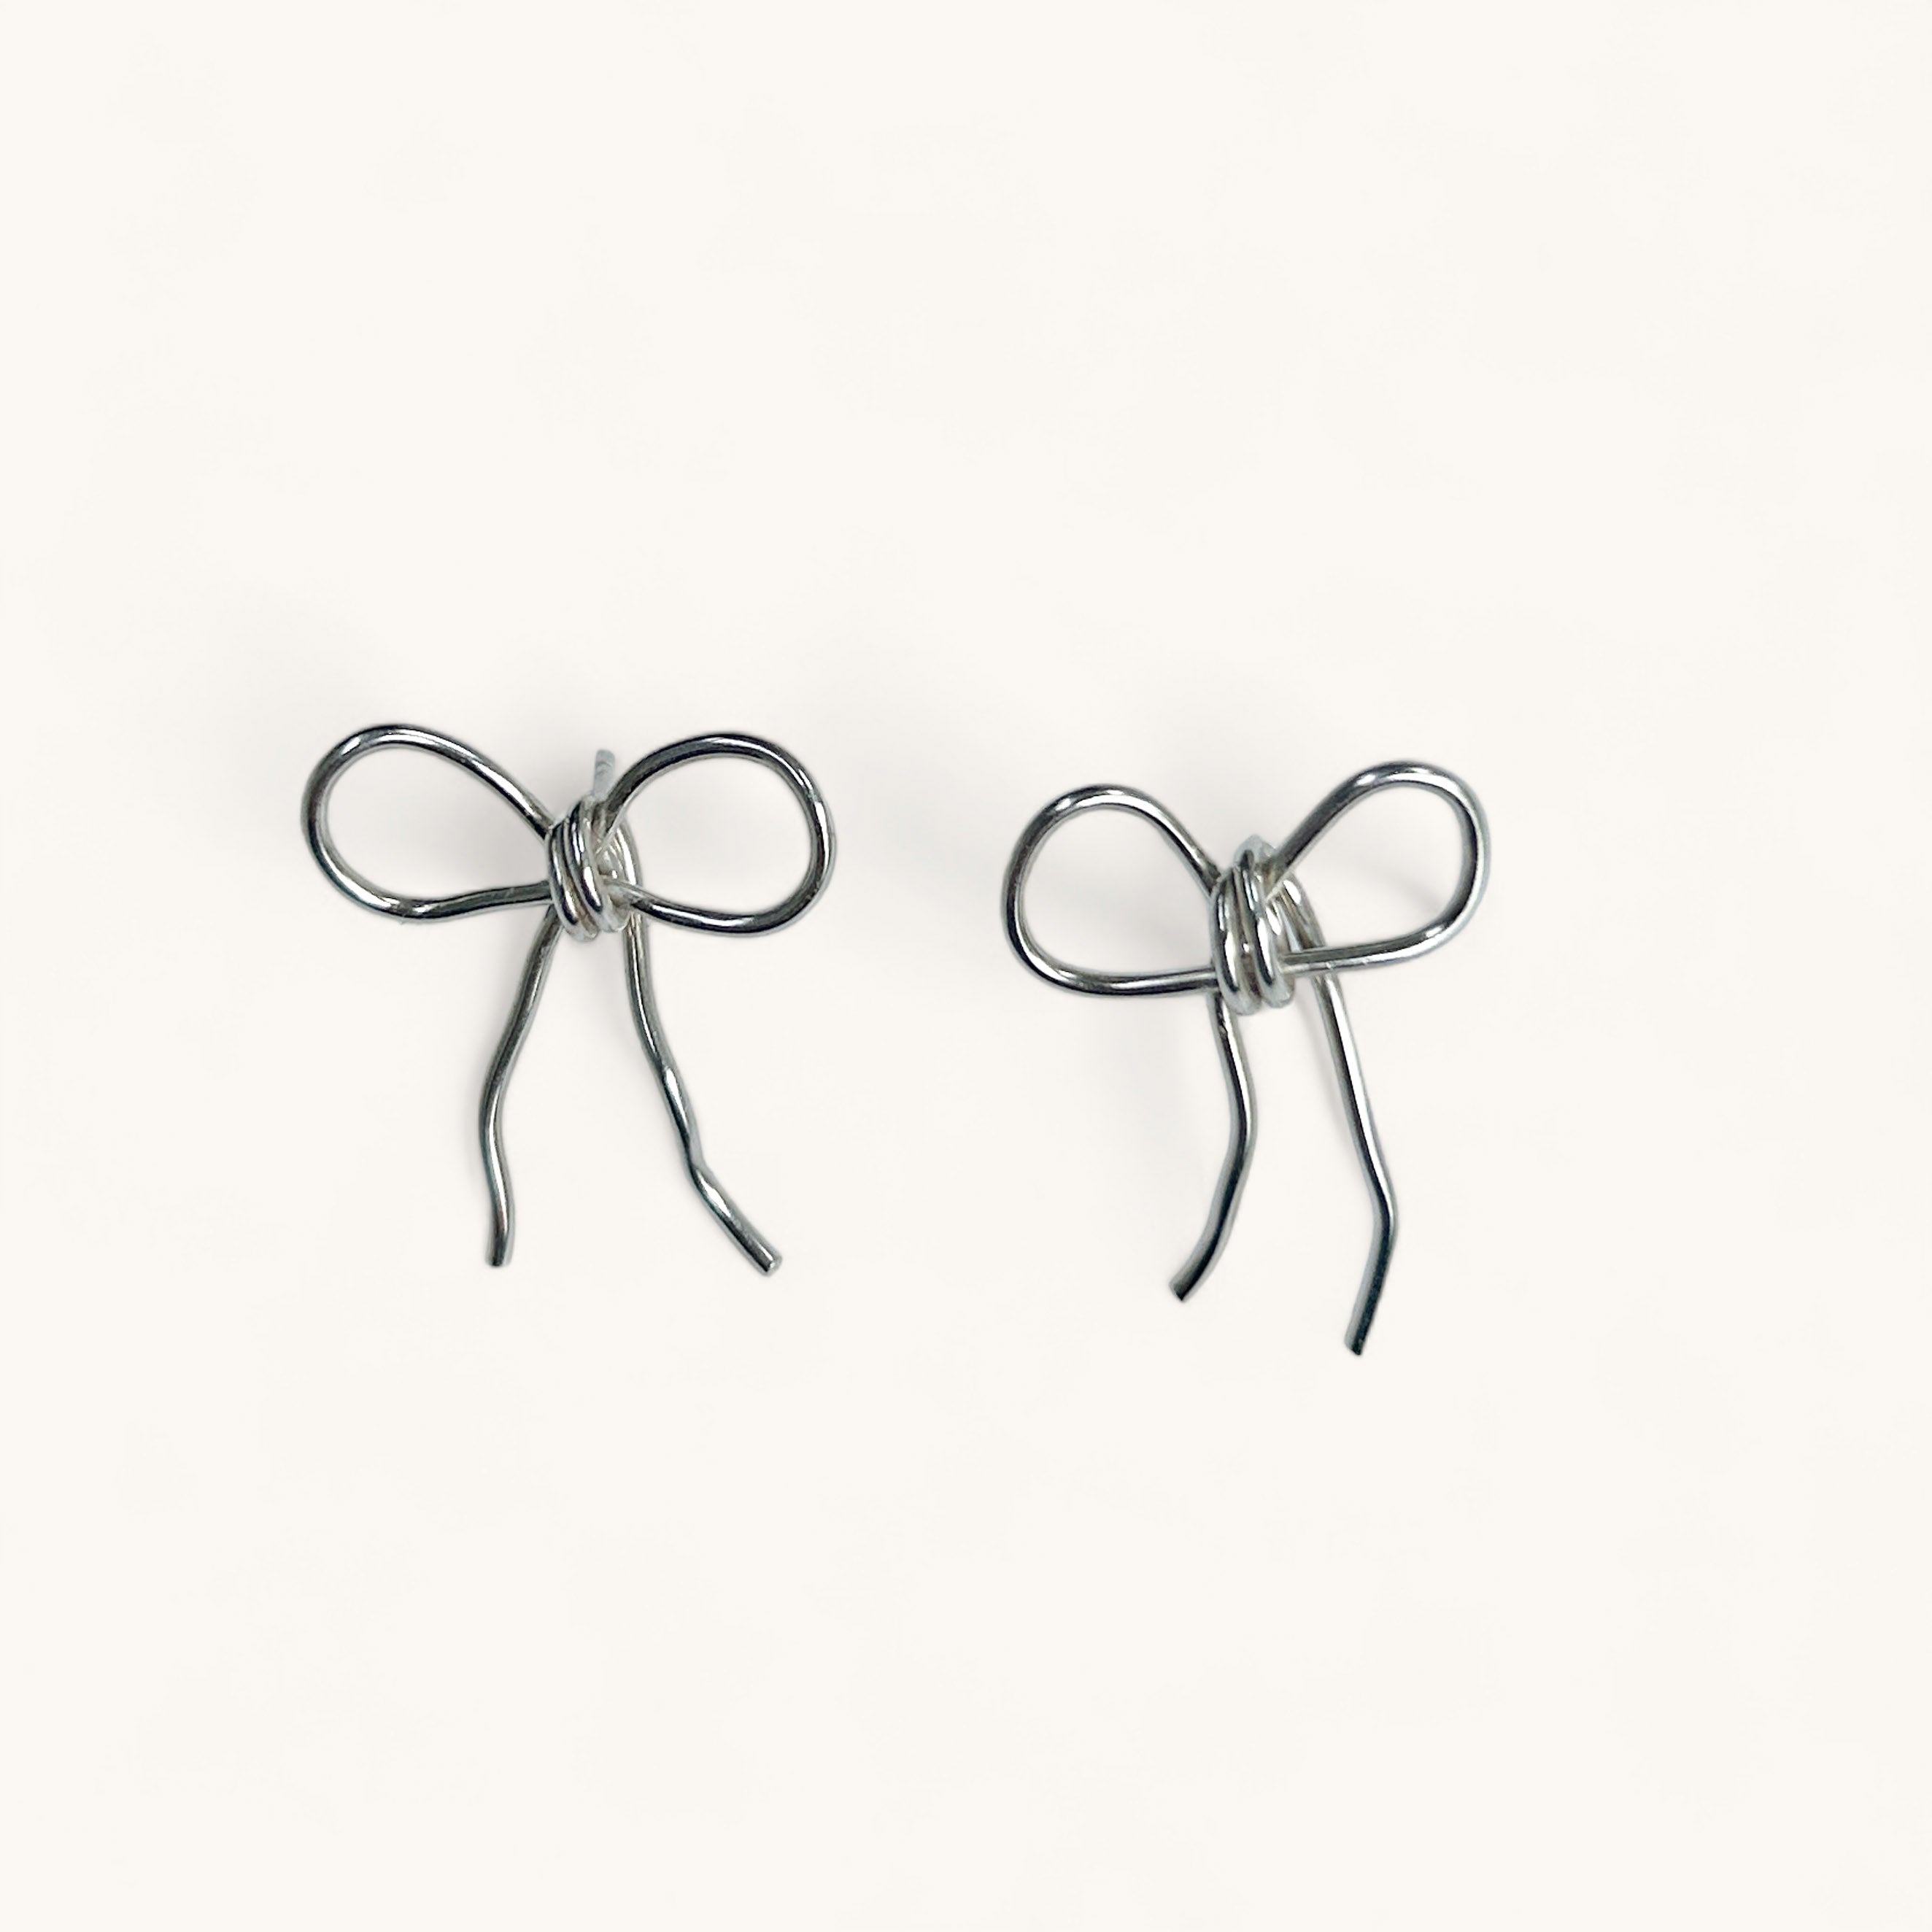 Jennifer Loiselle recycled silver ribbon bow earrings